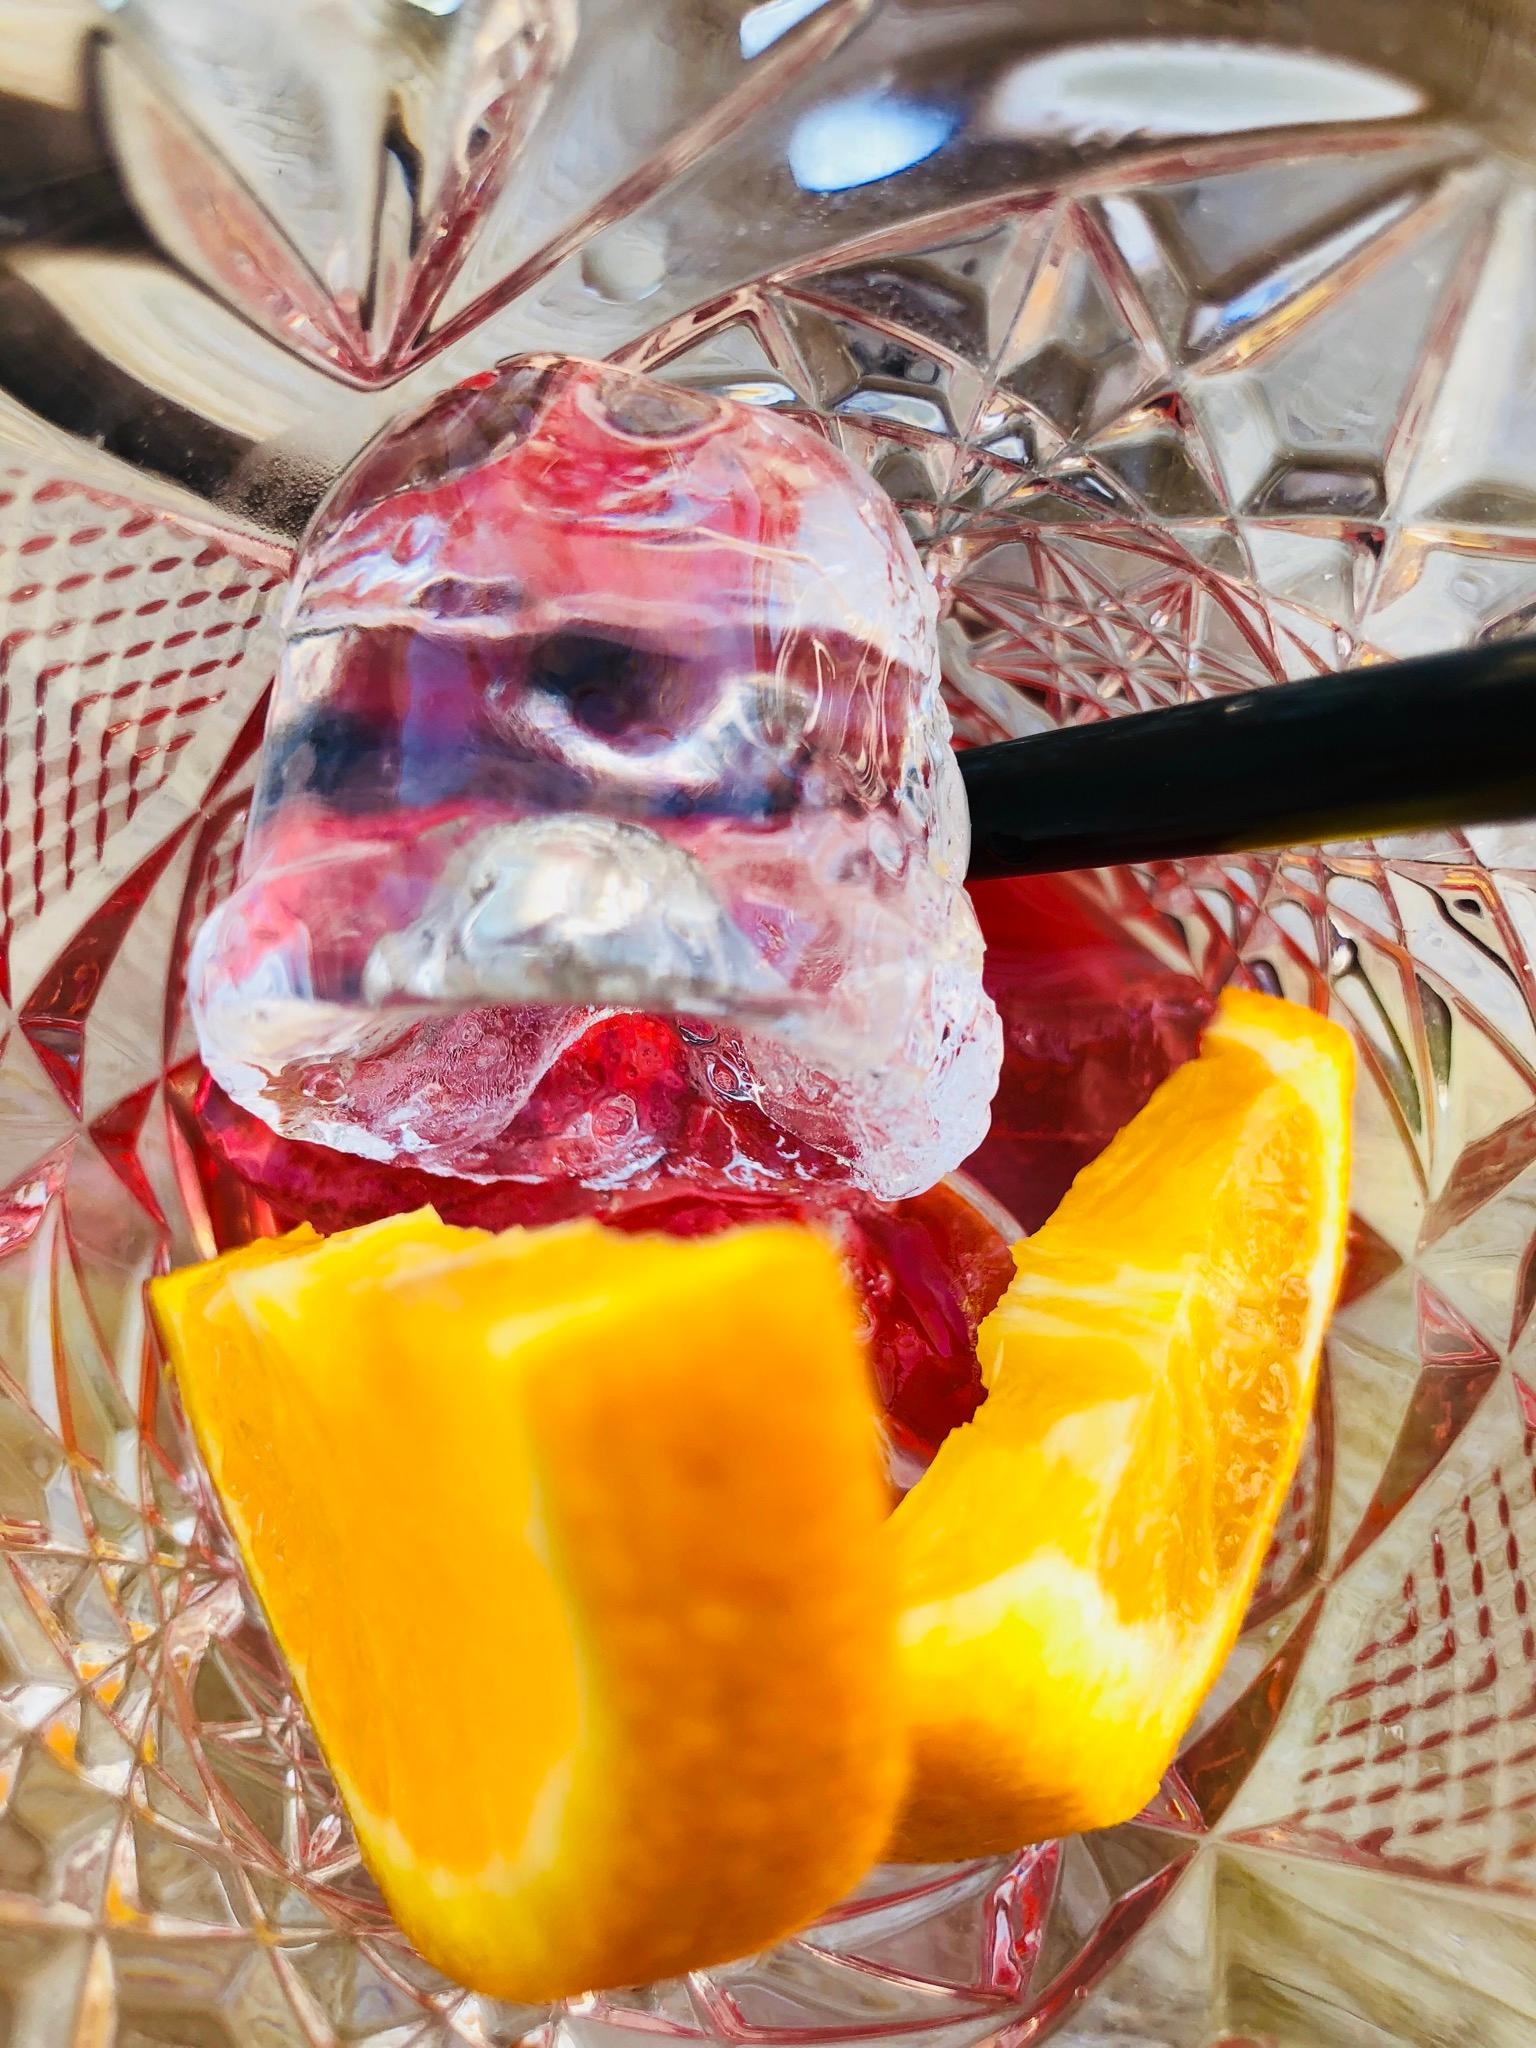 Kleine Erfrischung am Abend #sommergetränk #drink. Einfach #pampelmuse #granatapfel #orange mit #wasser auffüllen.